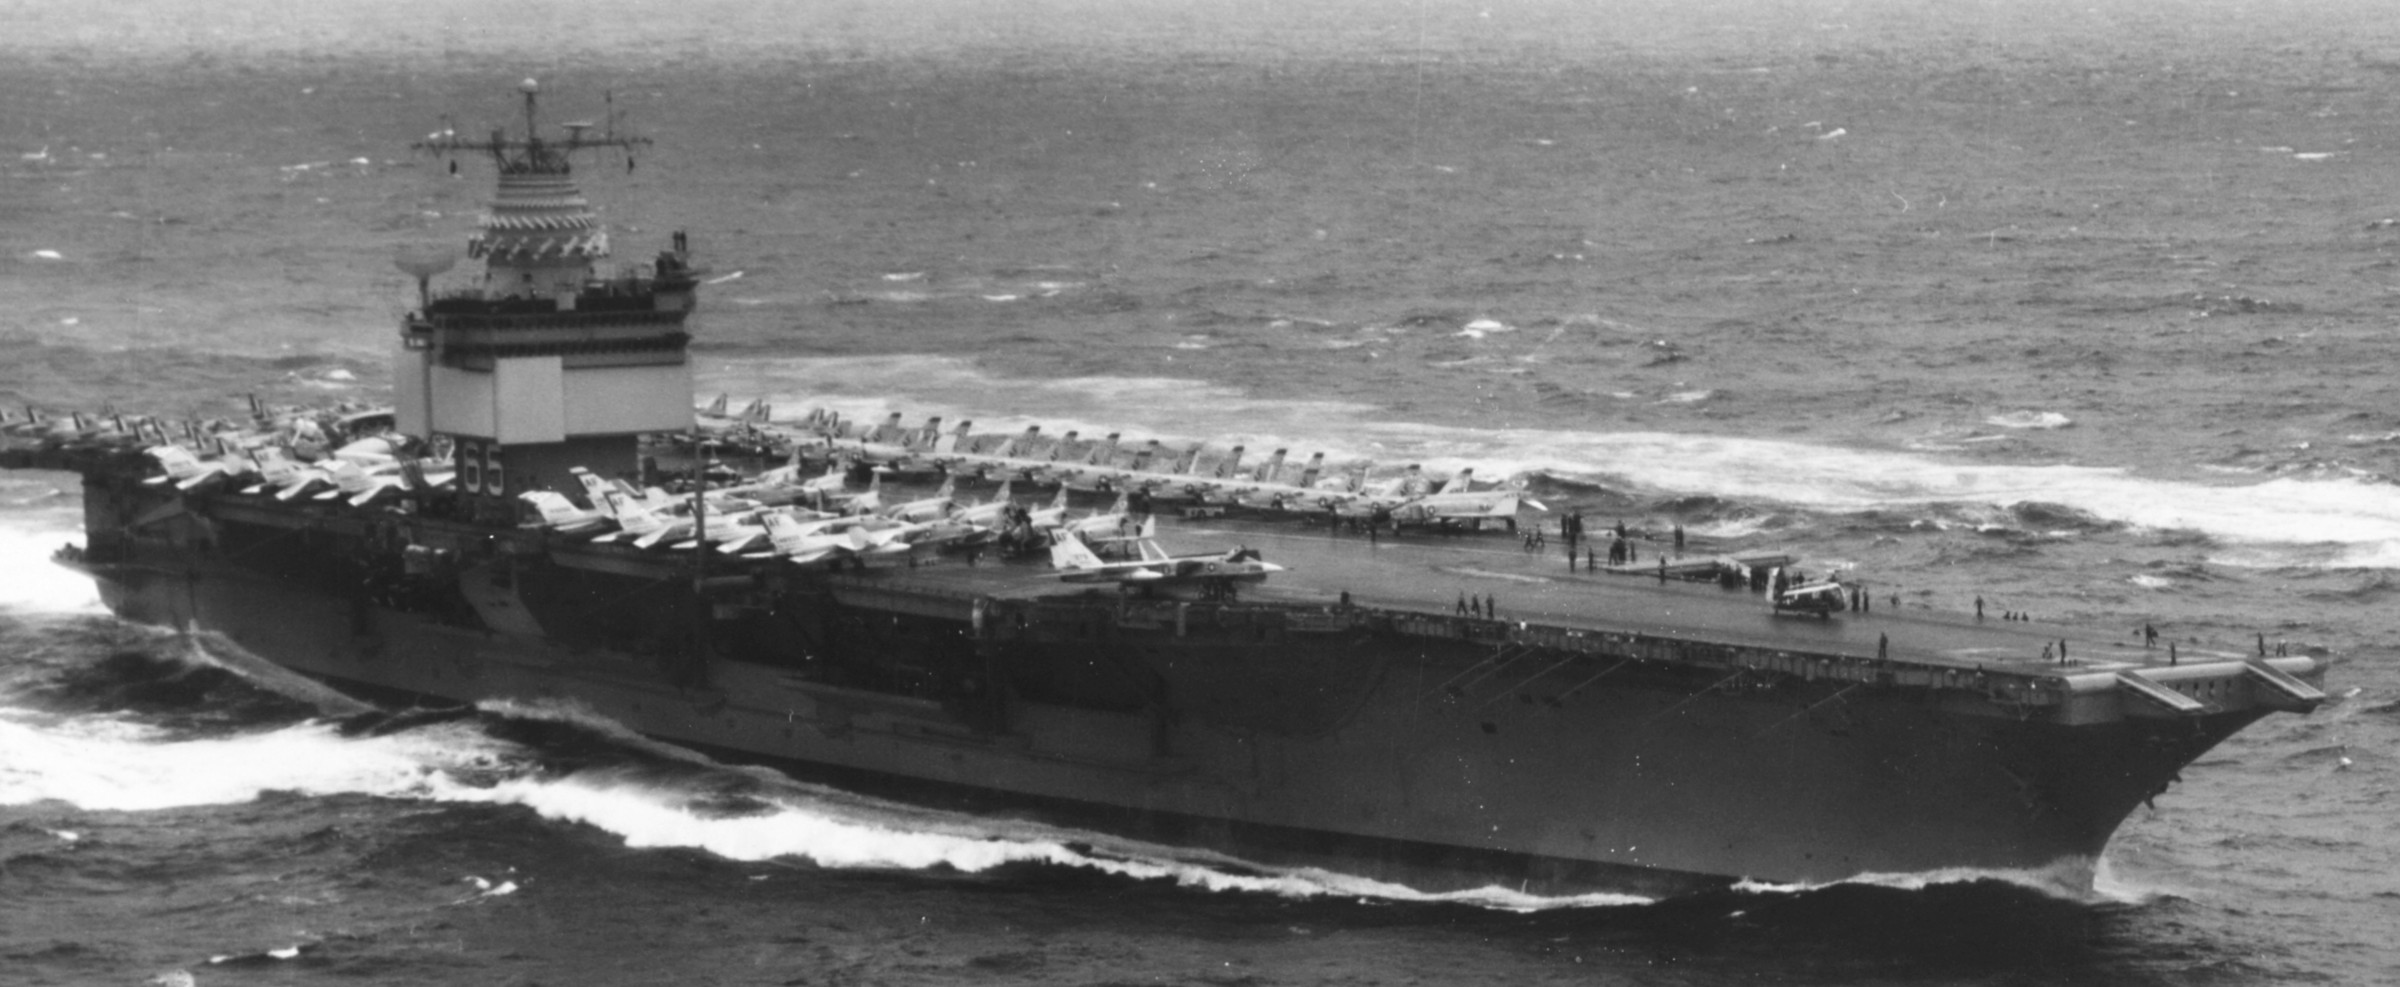 cvan-65 uss enterprise aircraft carrier air group cvg-6 us navy 1963 125